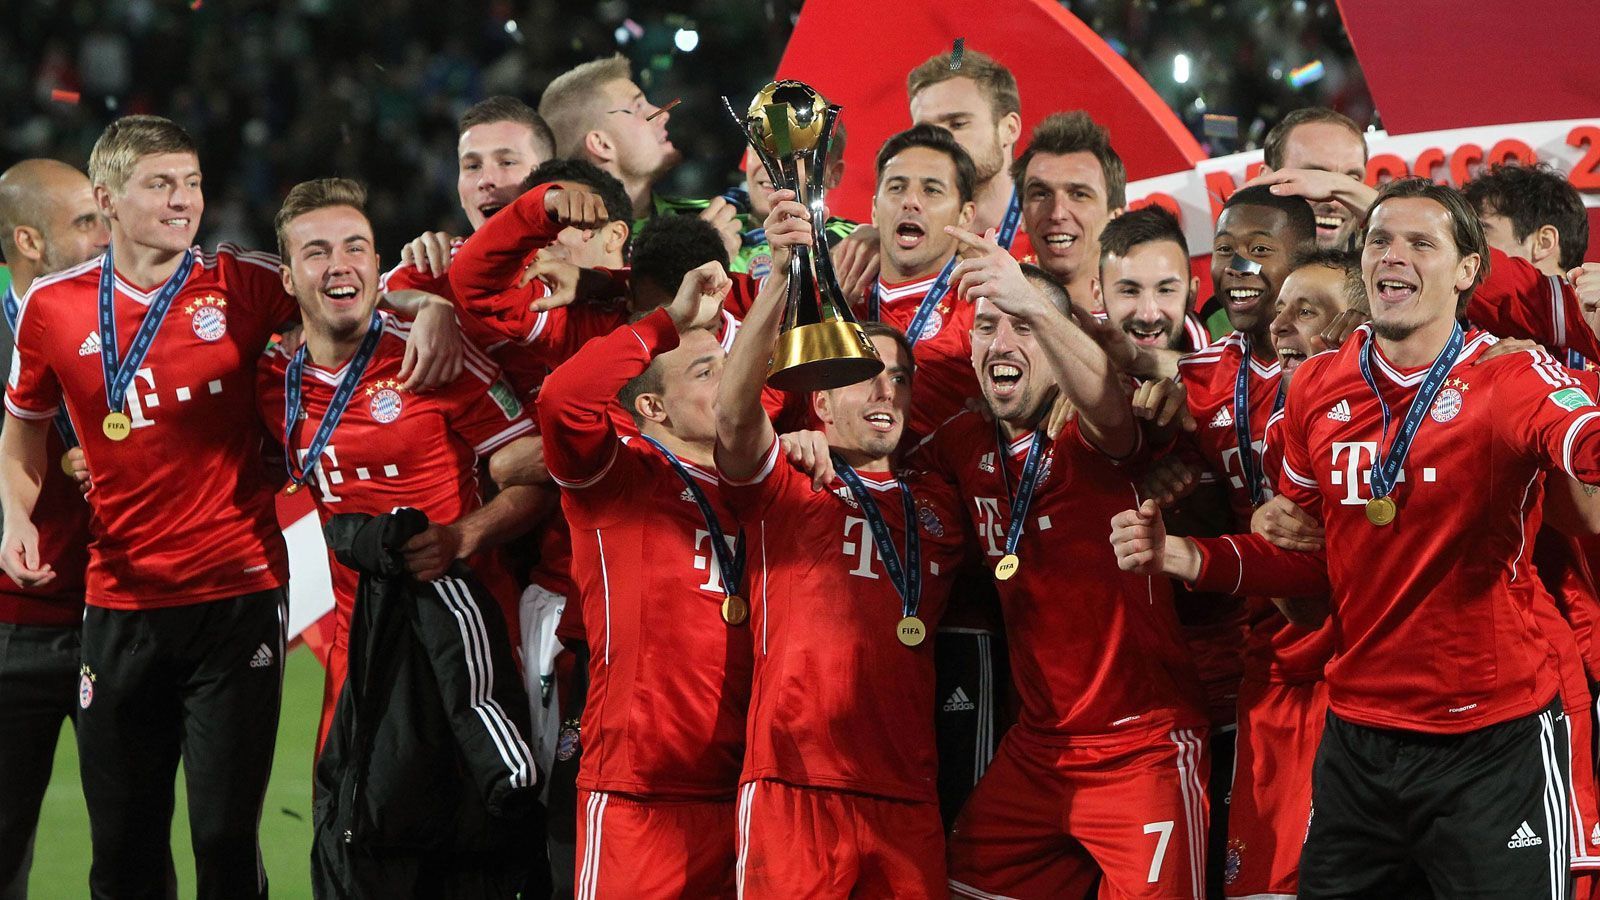 
                <strong>Am Ende sogar die Fußball-Könige der Welt</strong><br>
                Und weil sie gerade dabei waren, gewannen die Bayern einfach weiter Titel. Ende 2013 waren die Münchner offiziell das beste Team der Welt. Für Pizarro folgten ein weiteres Double sowie Meisterschaft Nummer sechs.
              